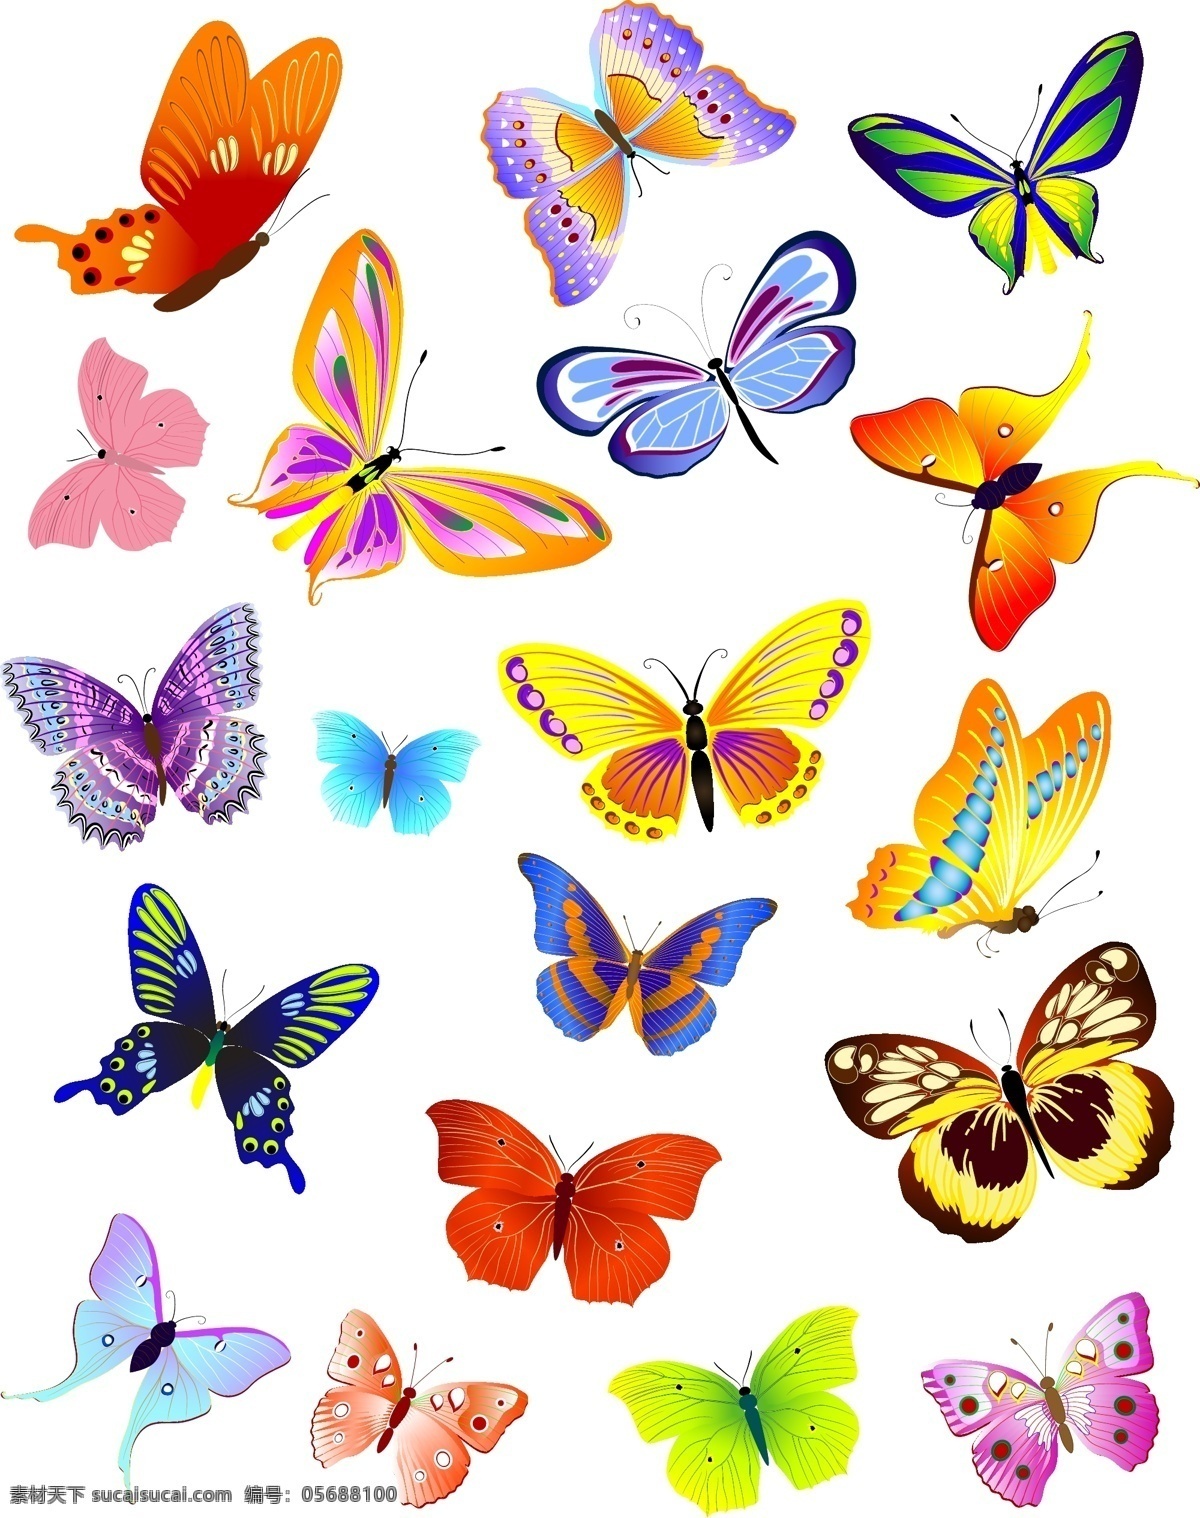 蝴蝶矢量素材 蝴蝶矢量 蝴蝶素材 蝴蝶 butterfly 共享设计矢量 生物世界 昆虫